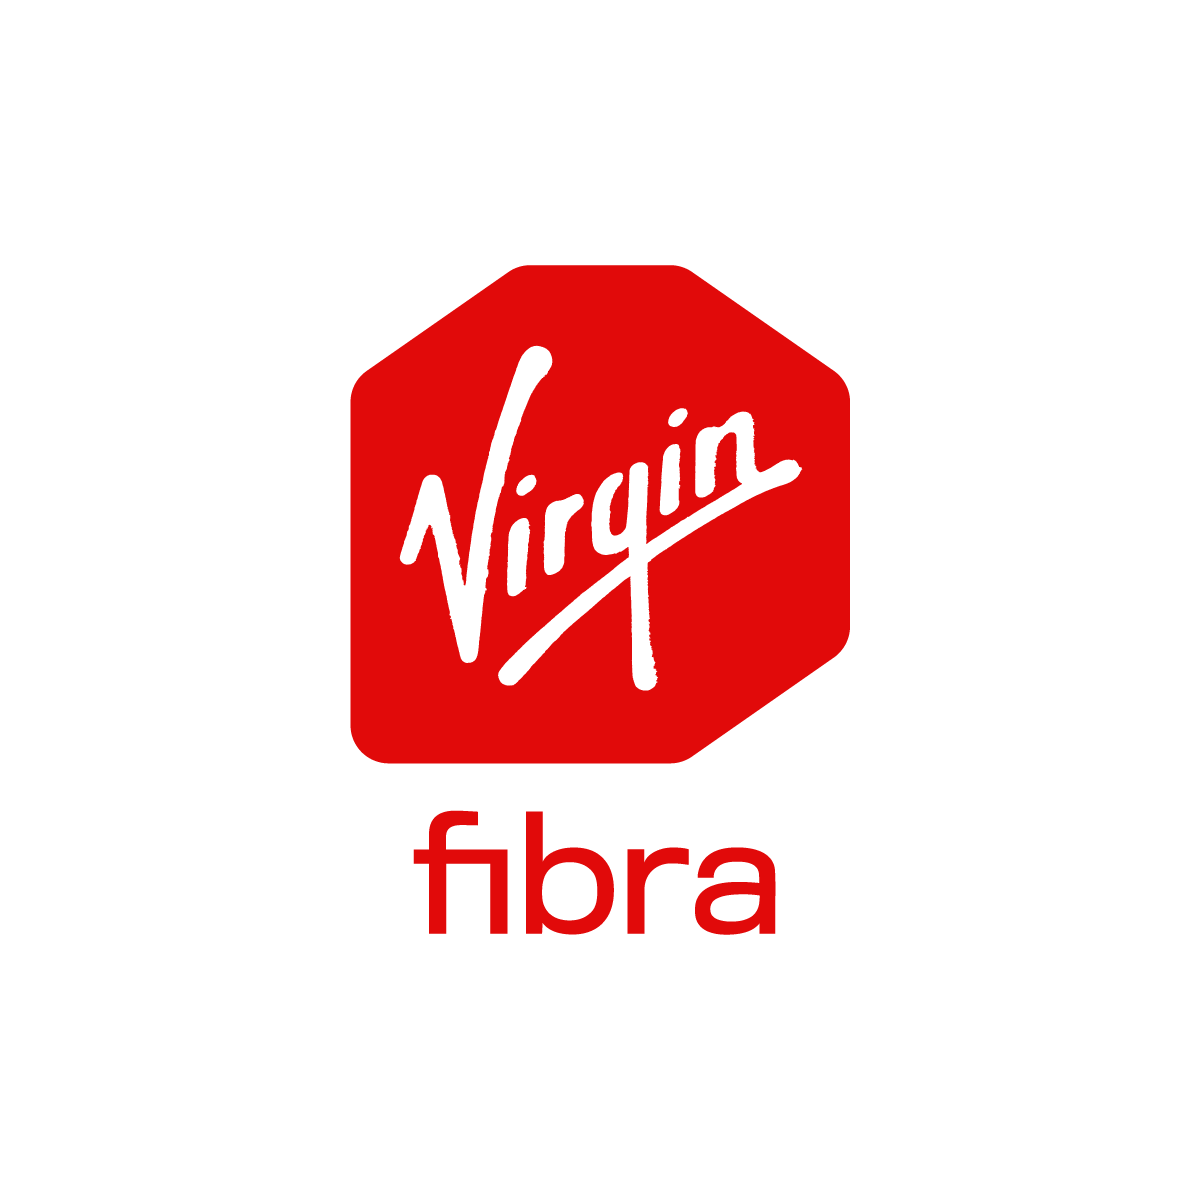 Red Virgin Fibra logo on white background